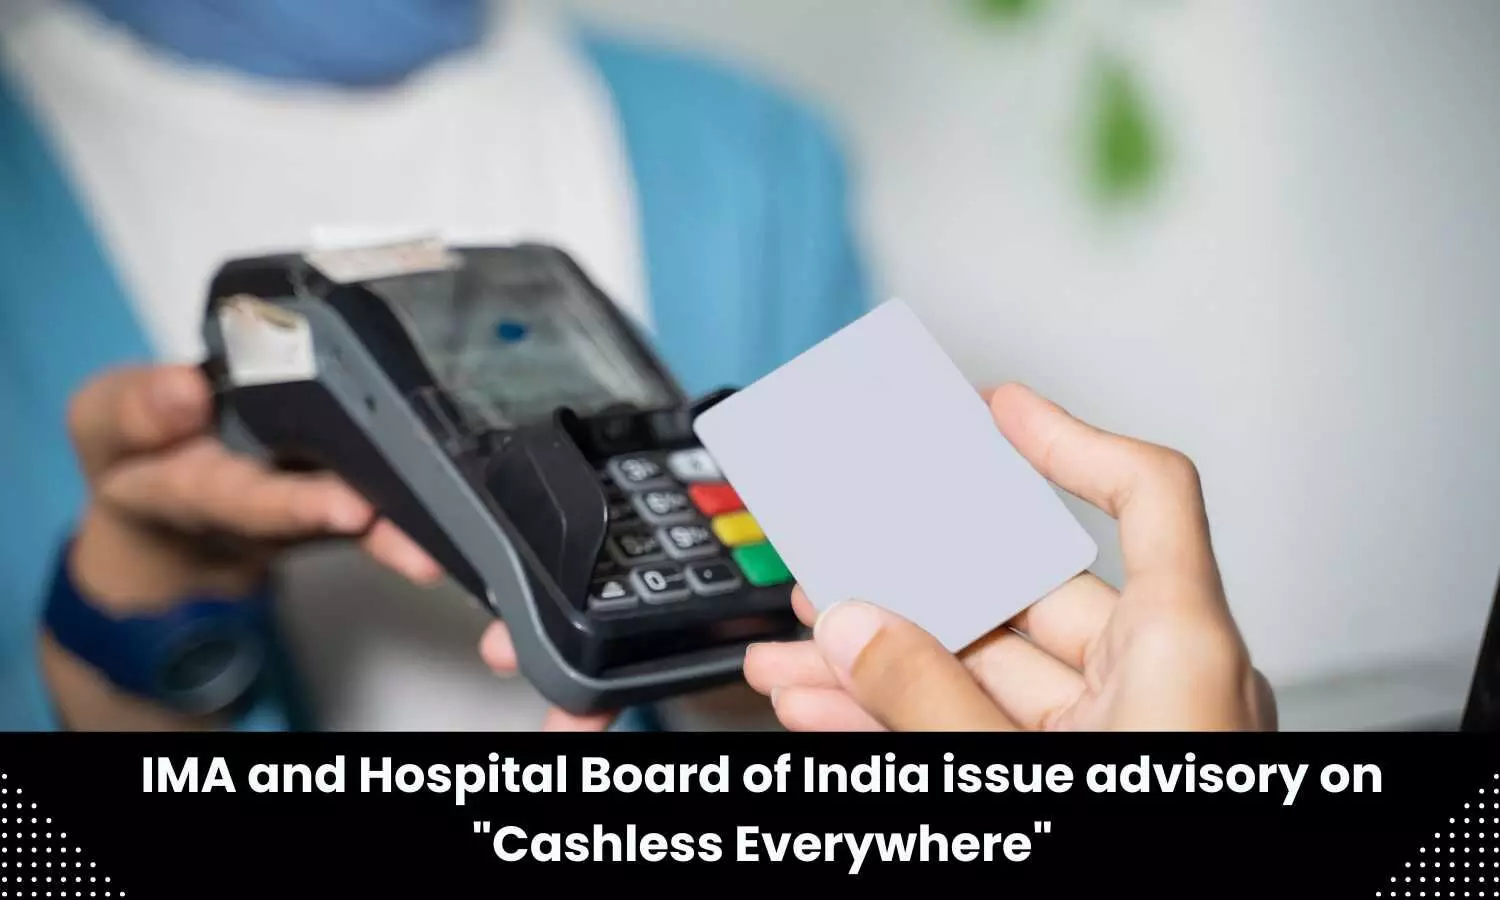 Advisory on Cashless Everywhere issued by IMA, Hospital Board of India